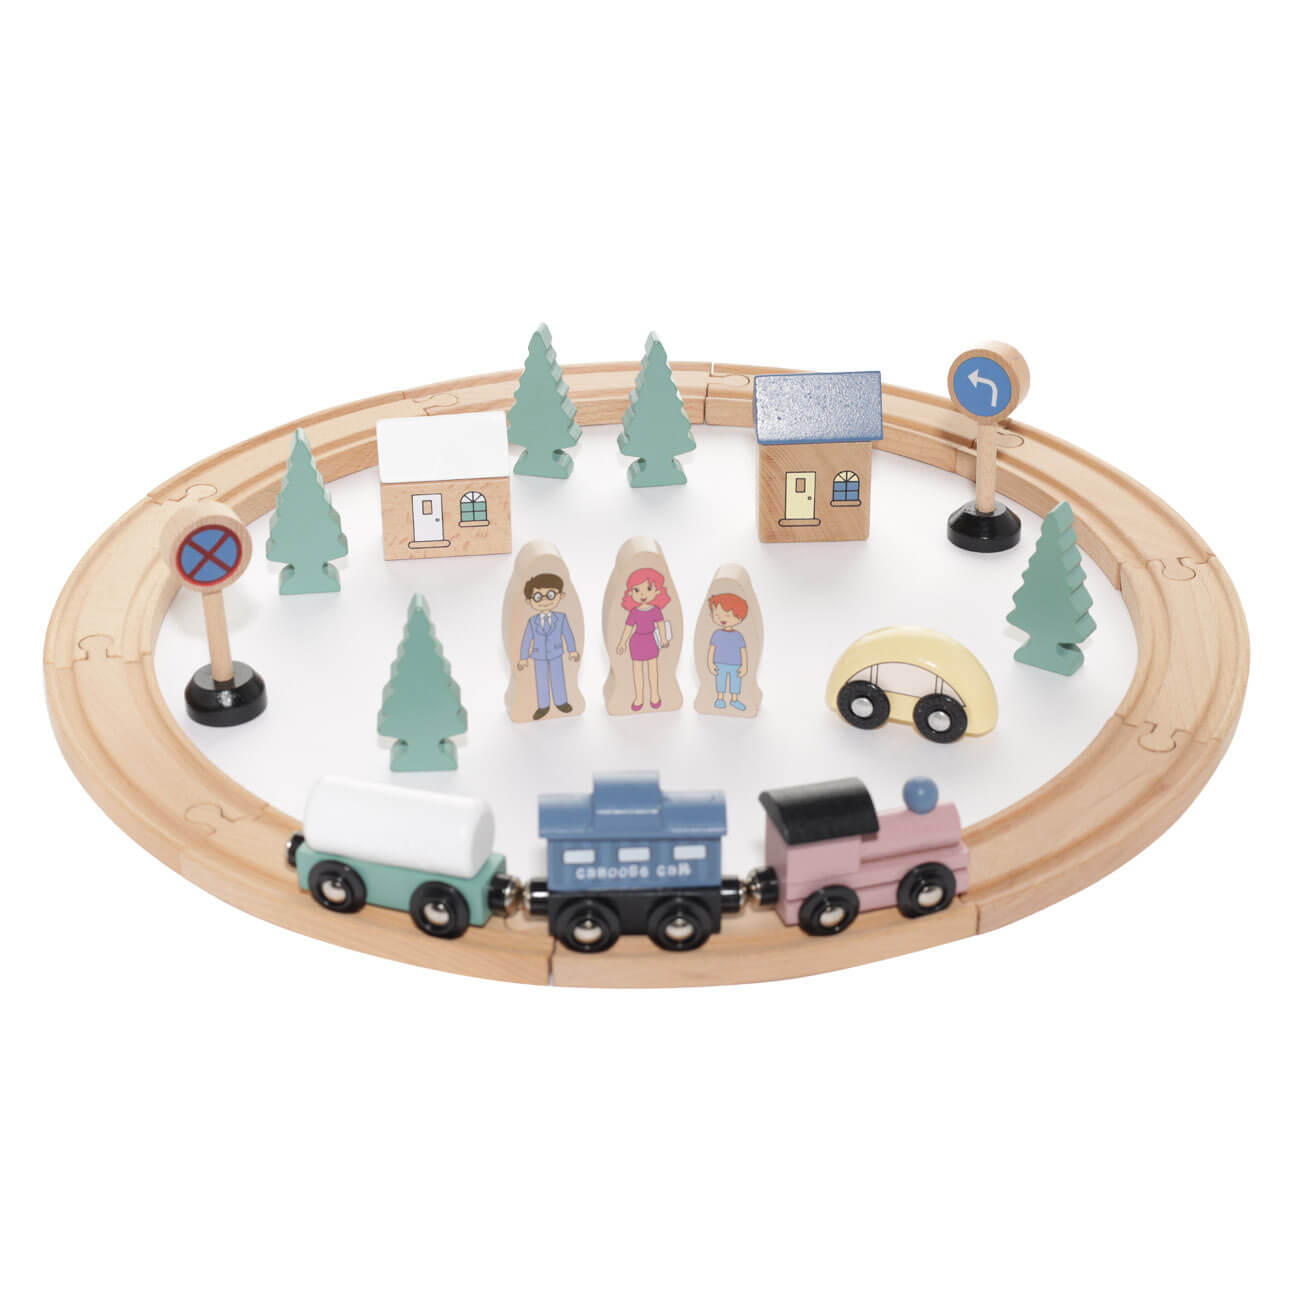 Железная дорога игрушечная, 28 см, дерево, Город, Game дорога запустения